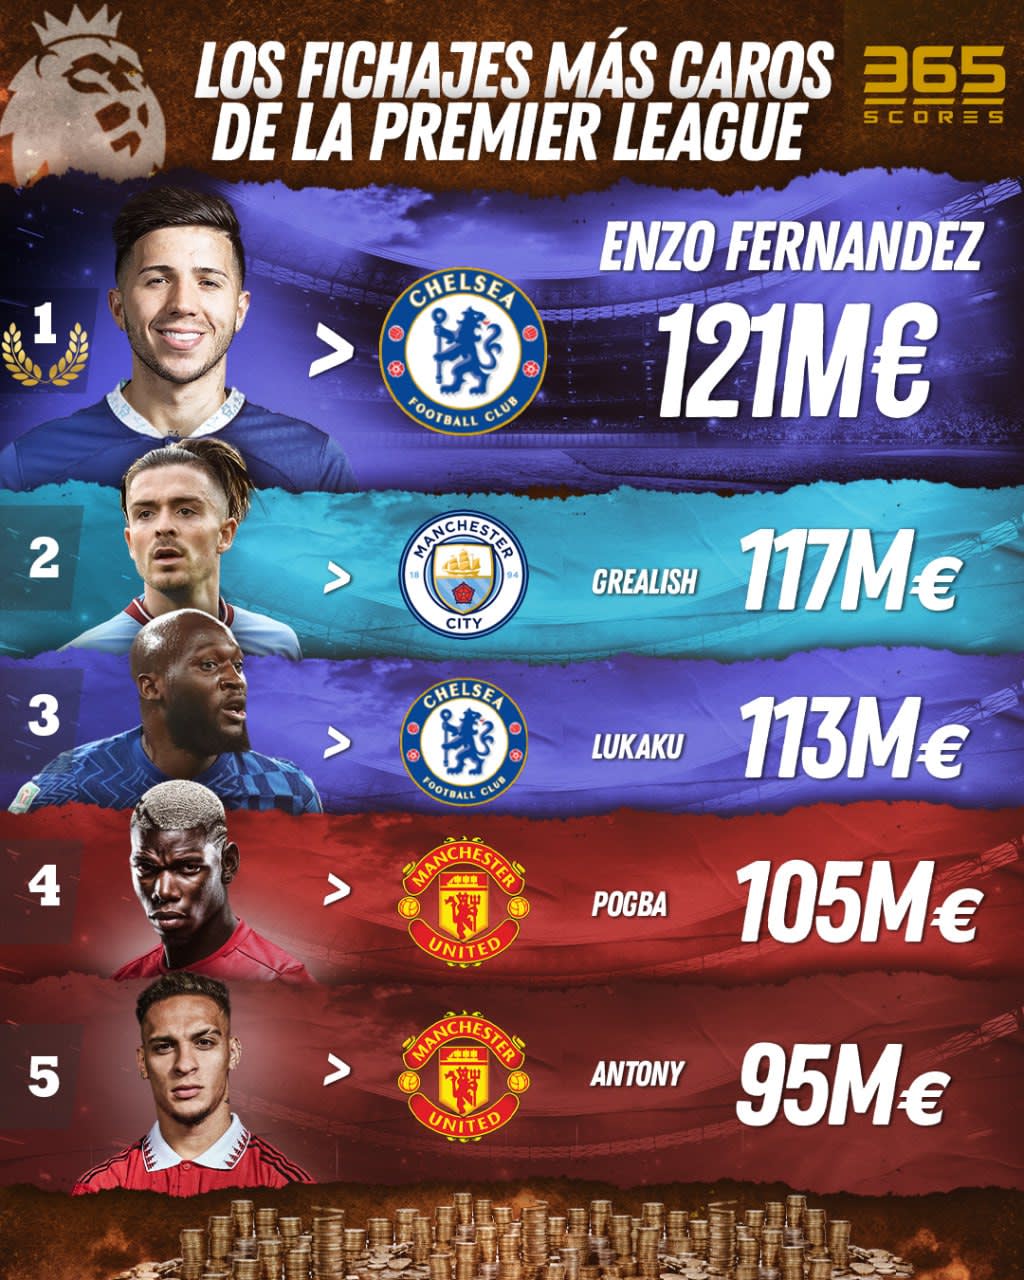 Enzo Fernández encabeza el TOP 5 de fichajes más caro en la historia de la Premier League. Foto: 365Scores App.